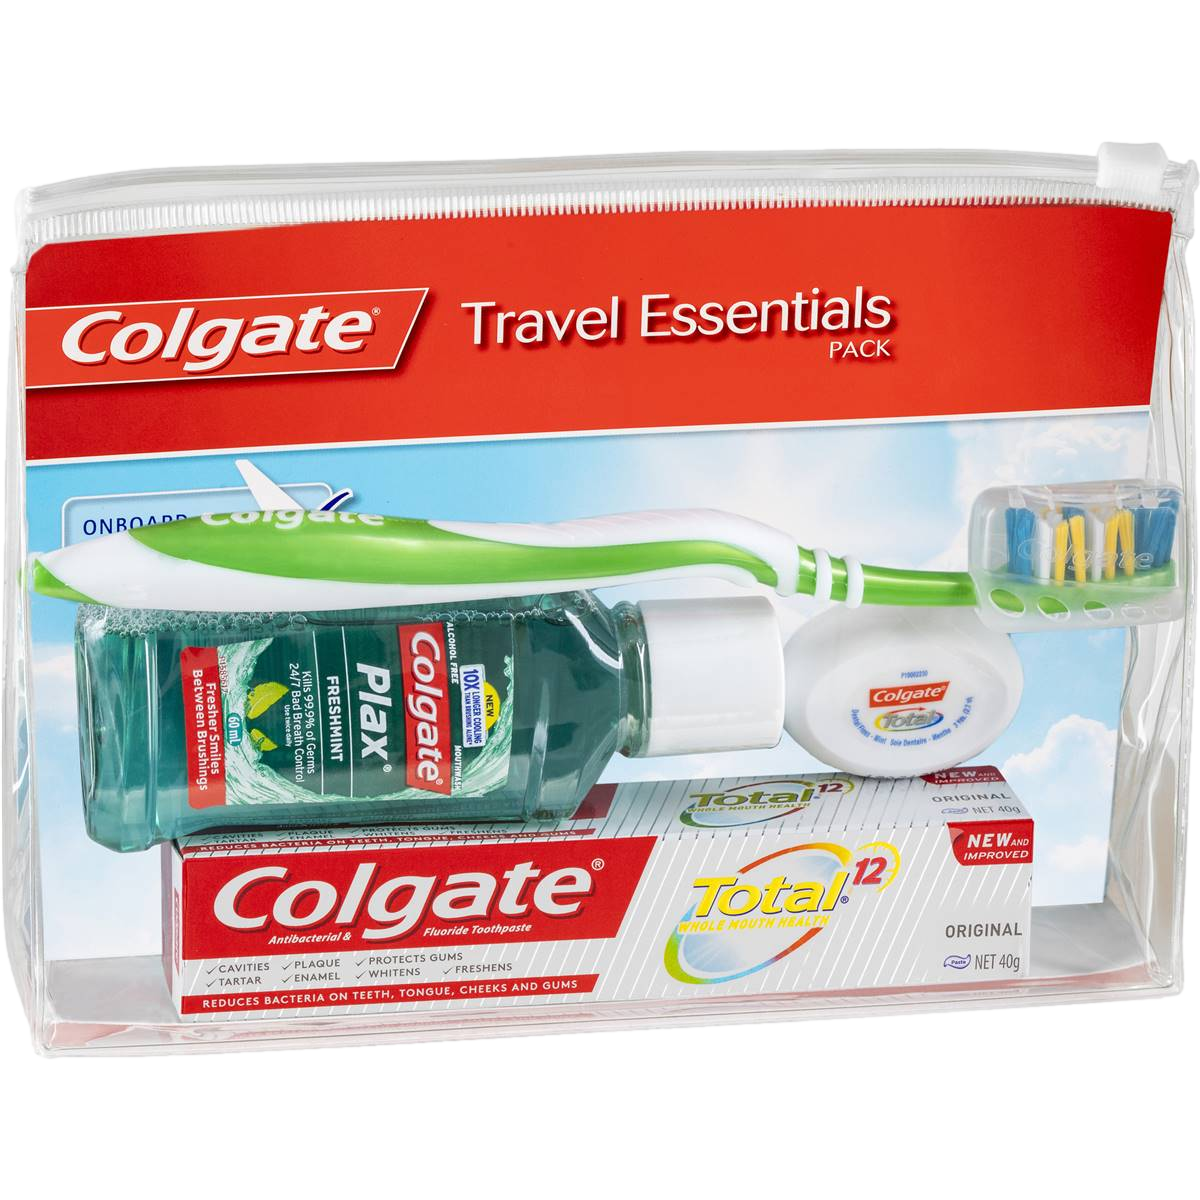 Colgate Travel Essentials Pack